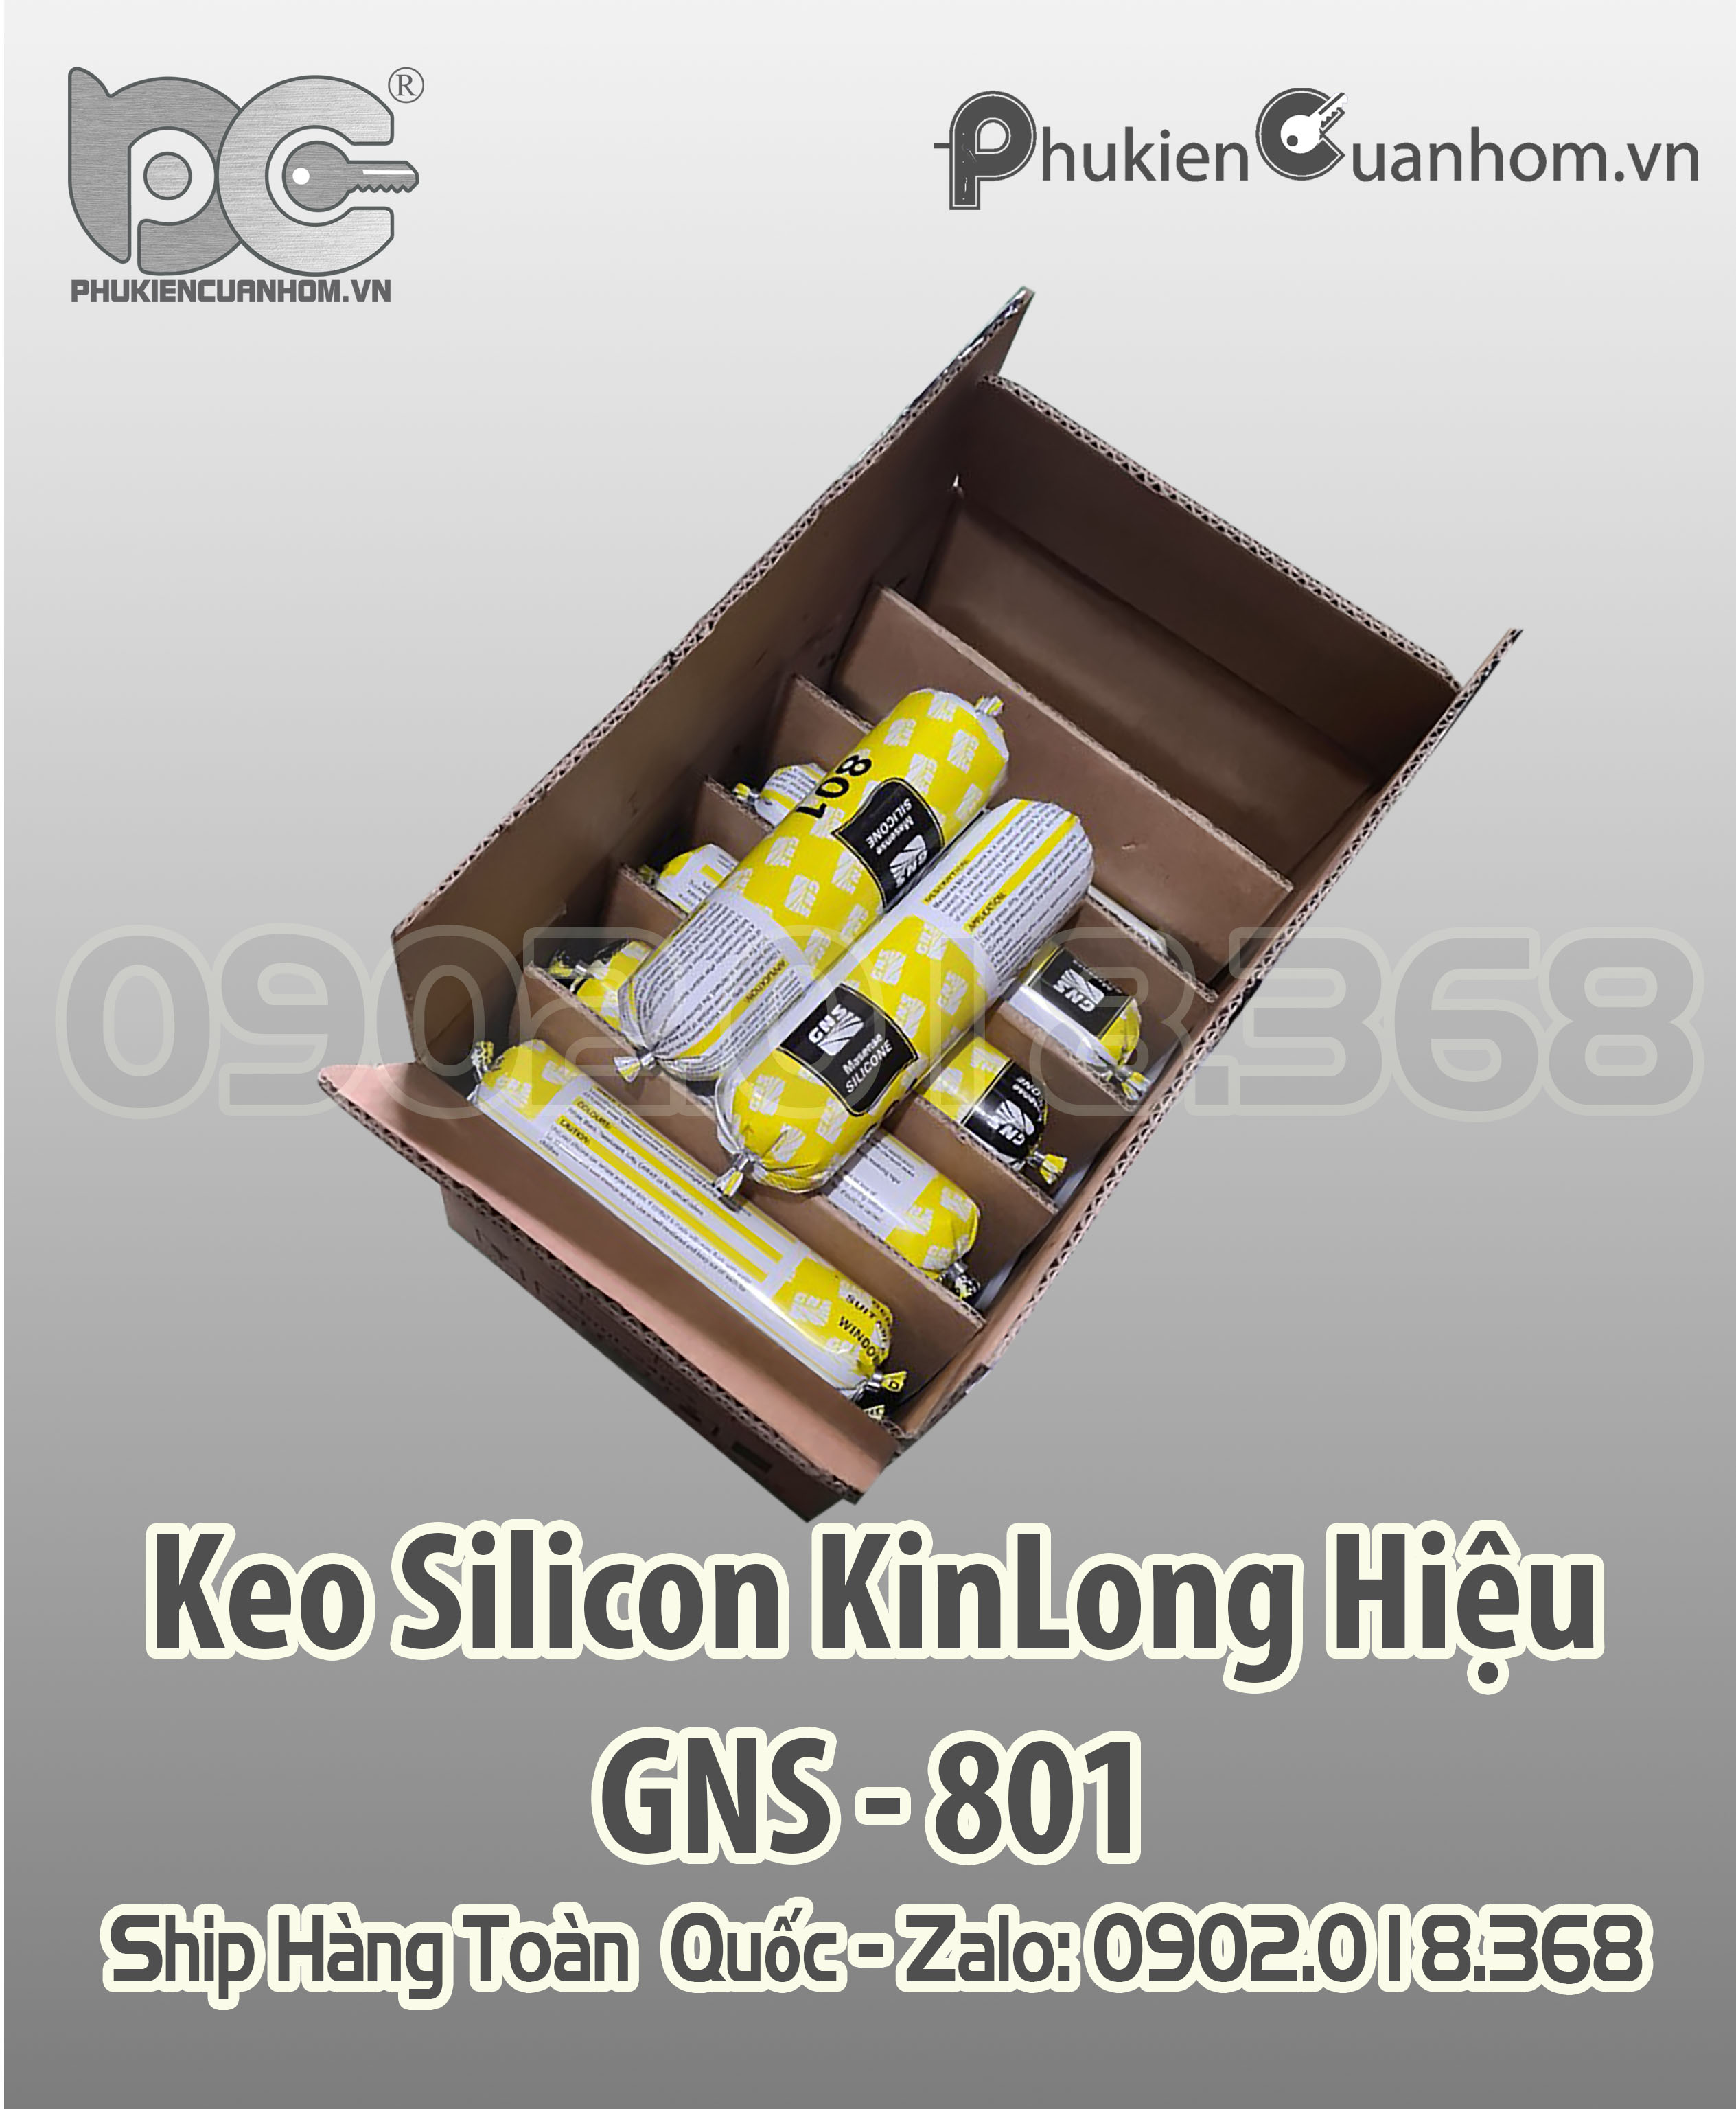 Keo silicone xúc xích KinLong hiệu GNS 801